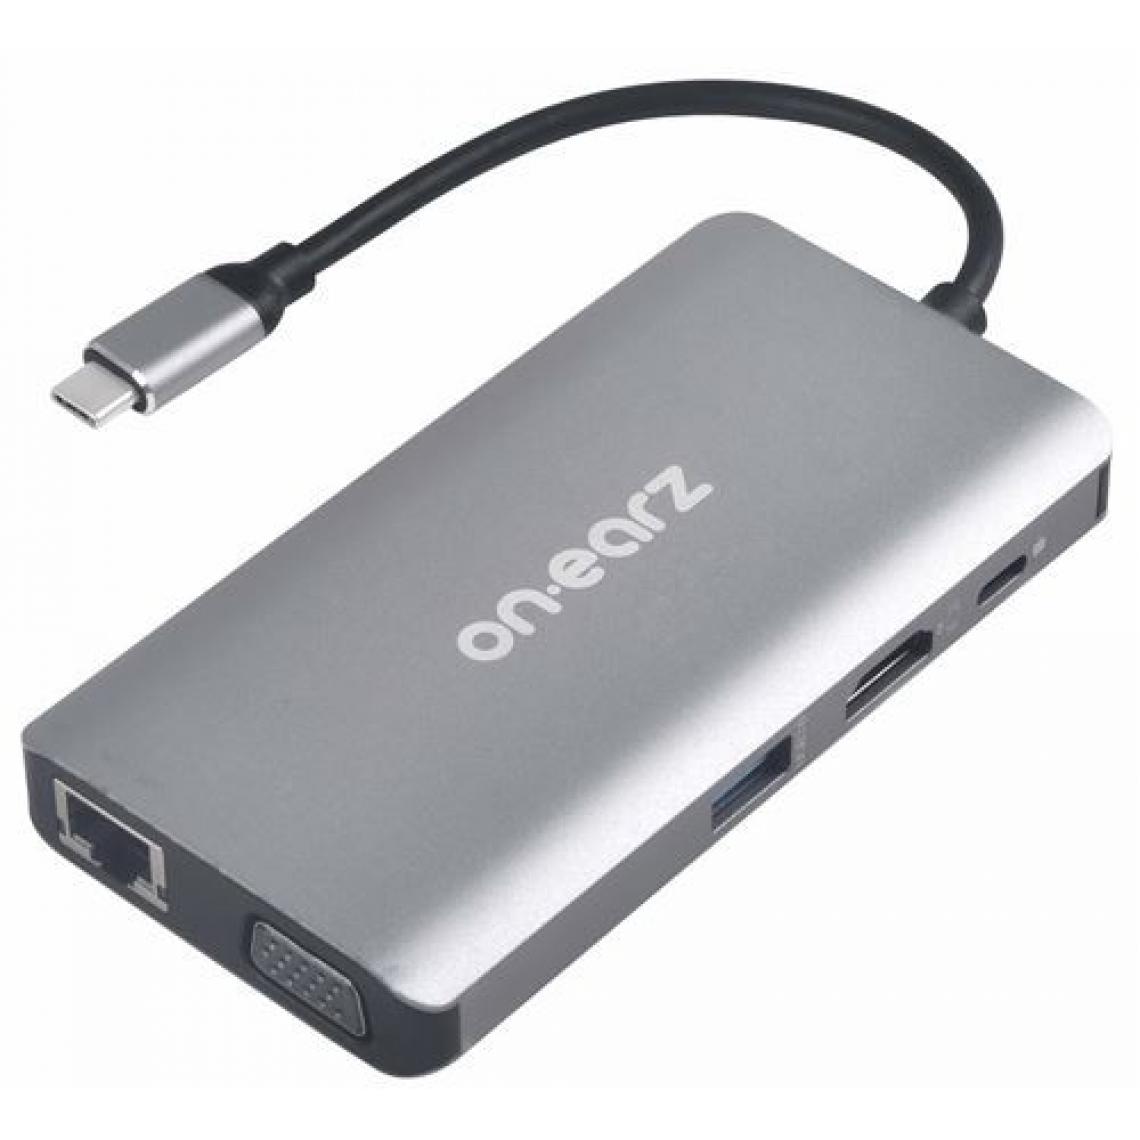 On Earz - Adaptateur USB C HUB 10 en 1 On Earz Mobile Gear Gris - Hub